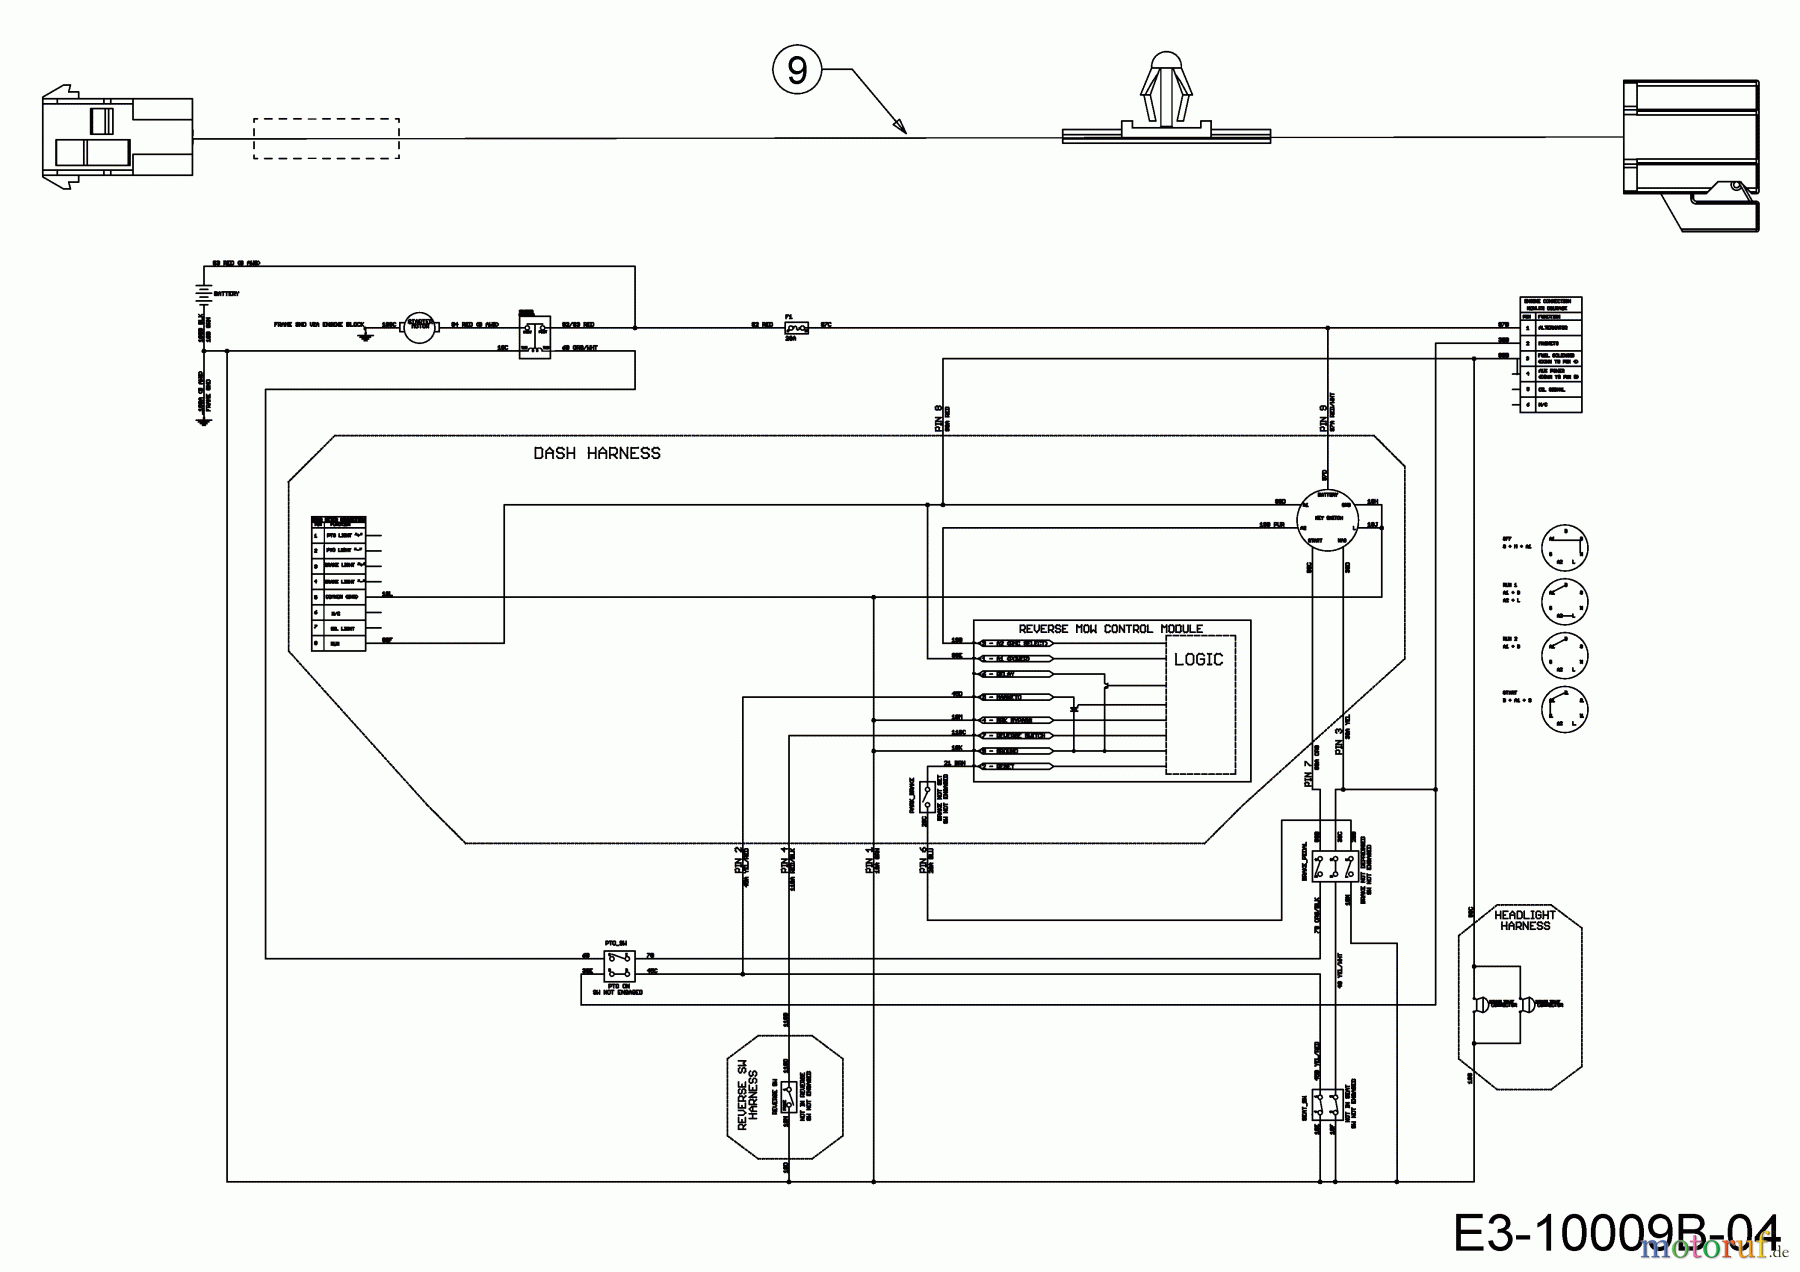  Cub Cadet Lawn tractors XT1 OS107 13B8A1CS603  (2019) Wiring diagram reverse